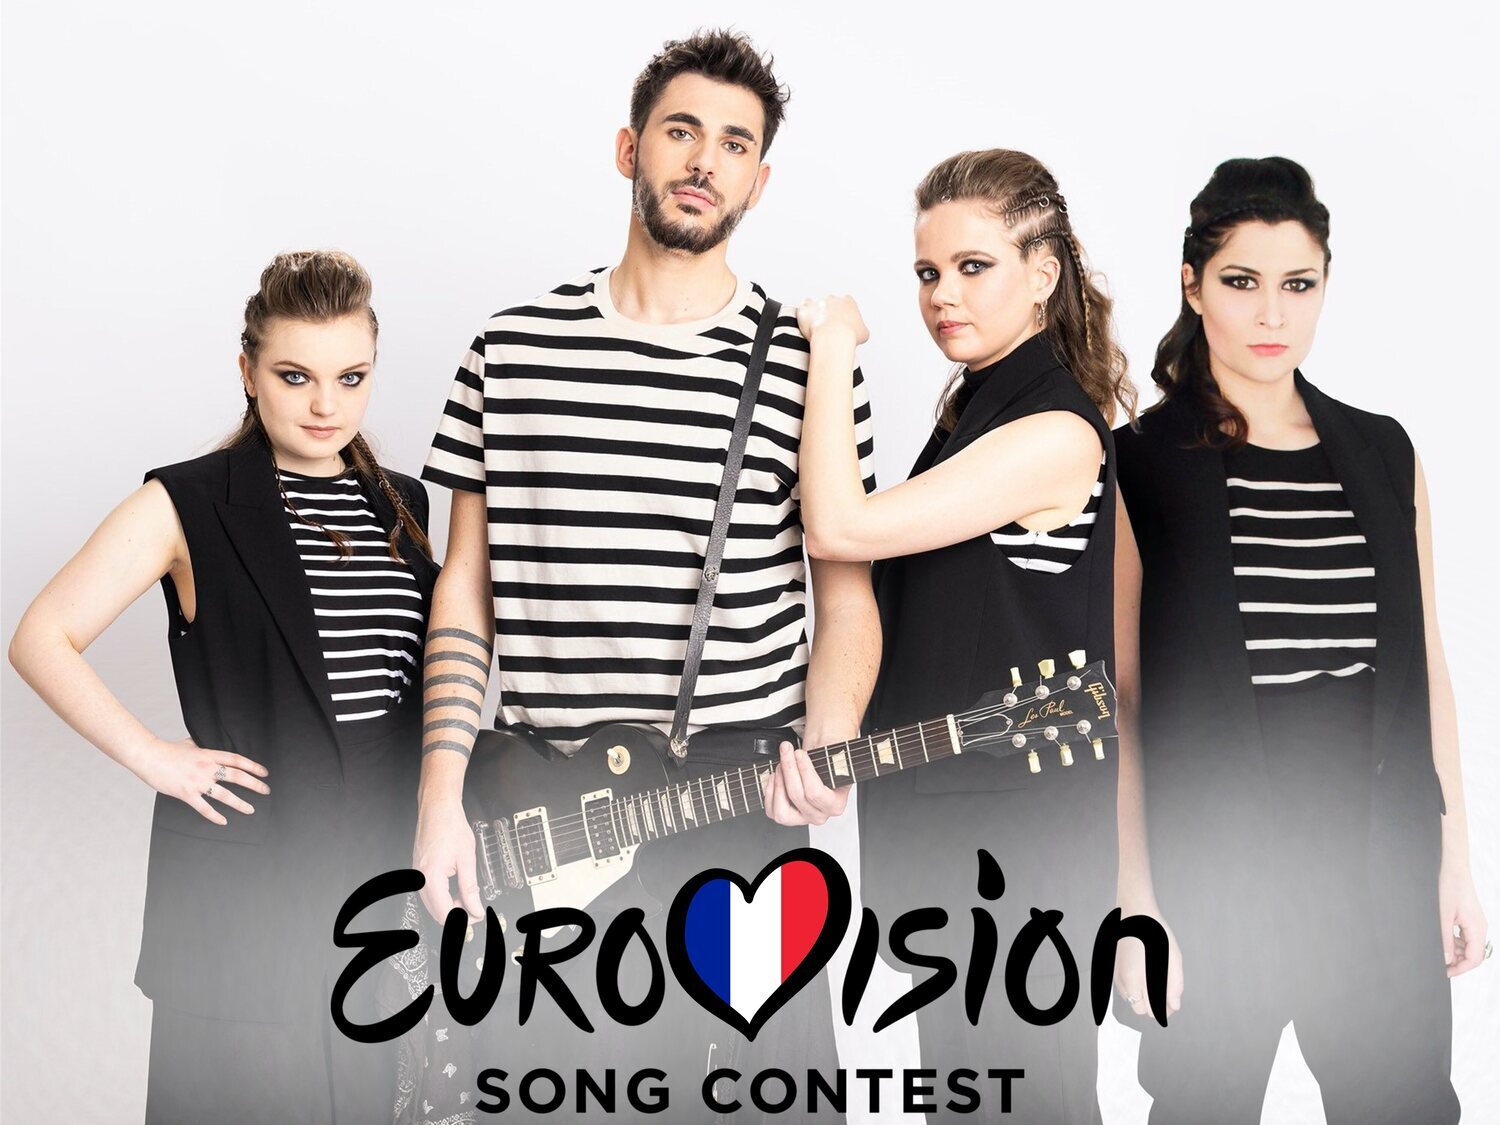 Francia apuesta por el bretón para Eurovisión 2022 con 'Fulenn' de Alvan & Ahez